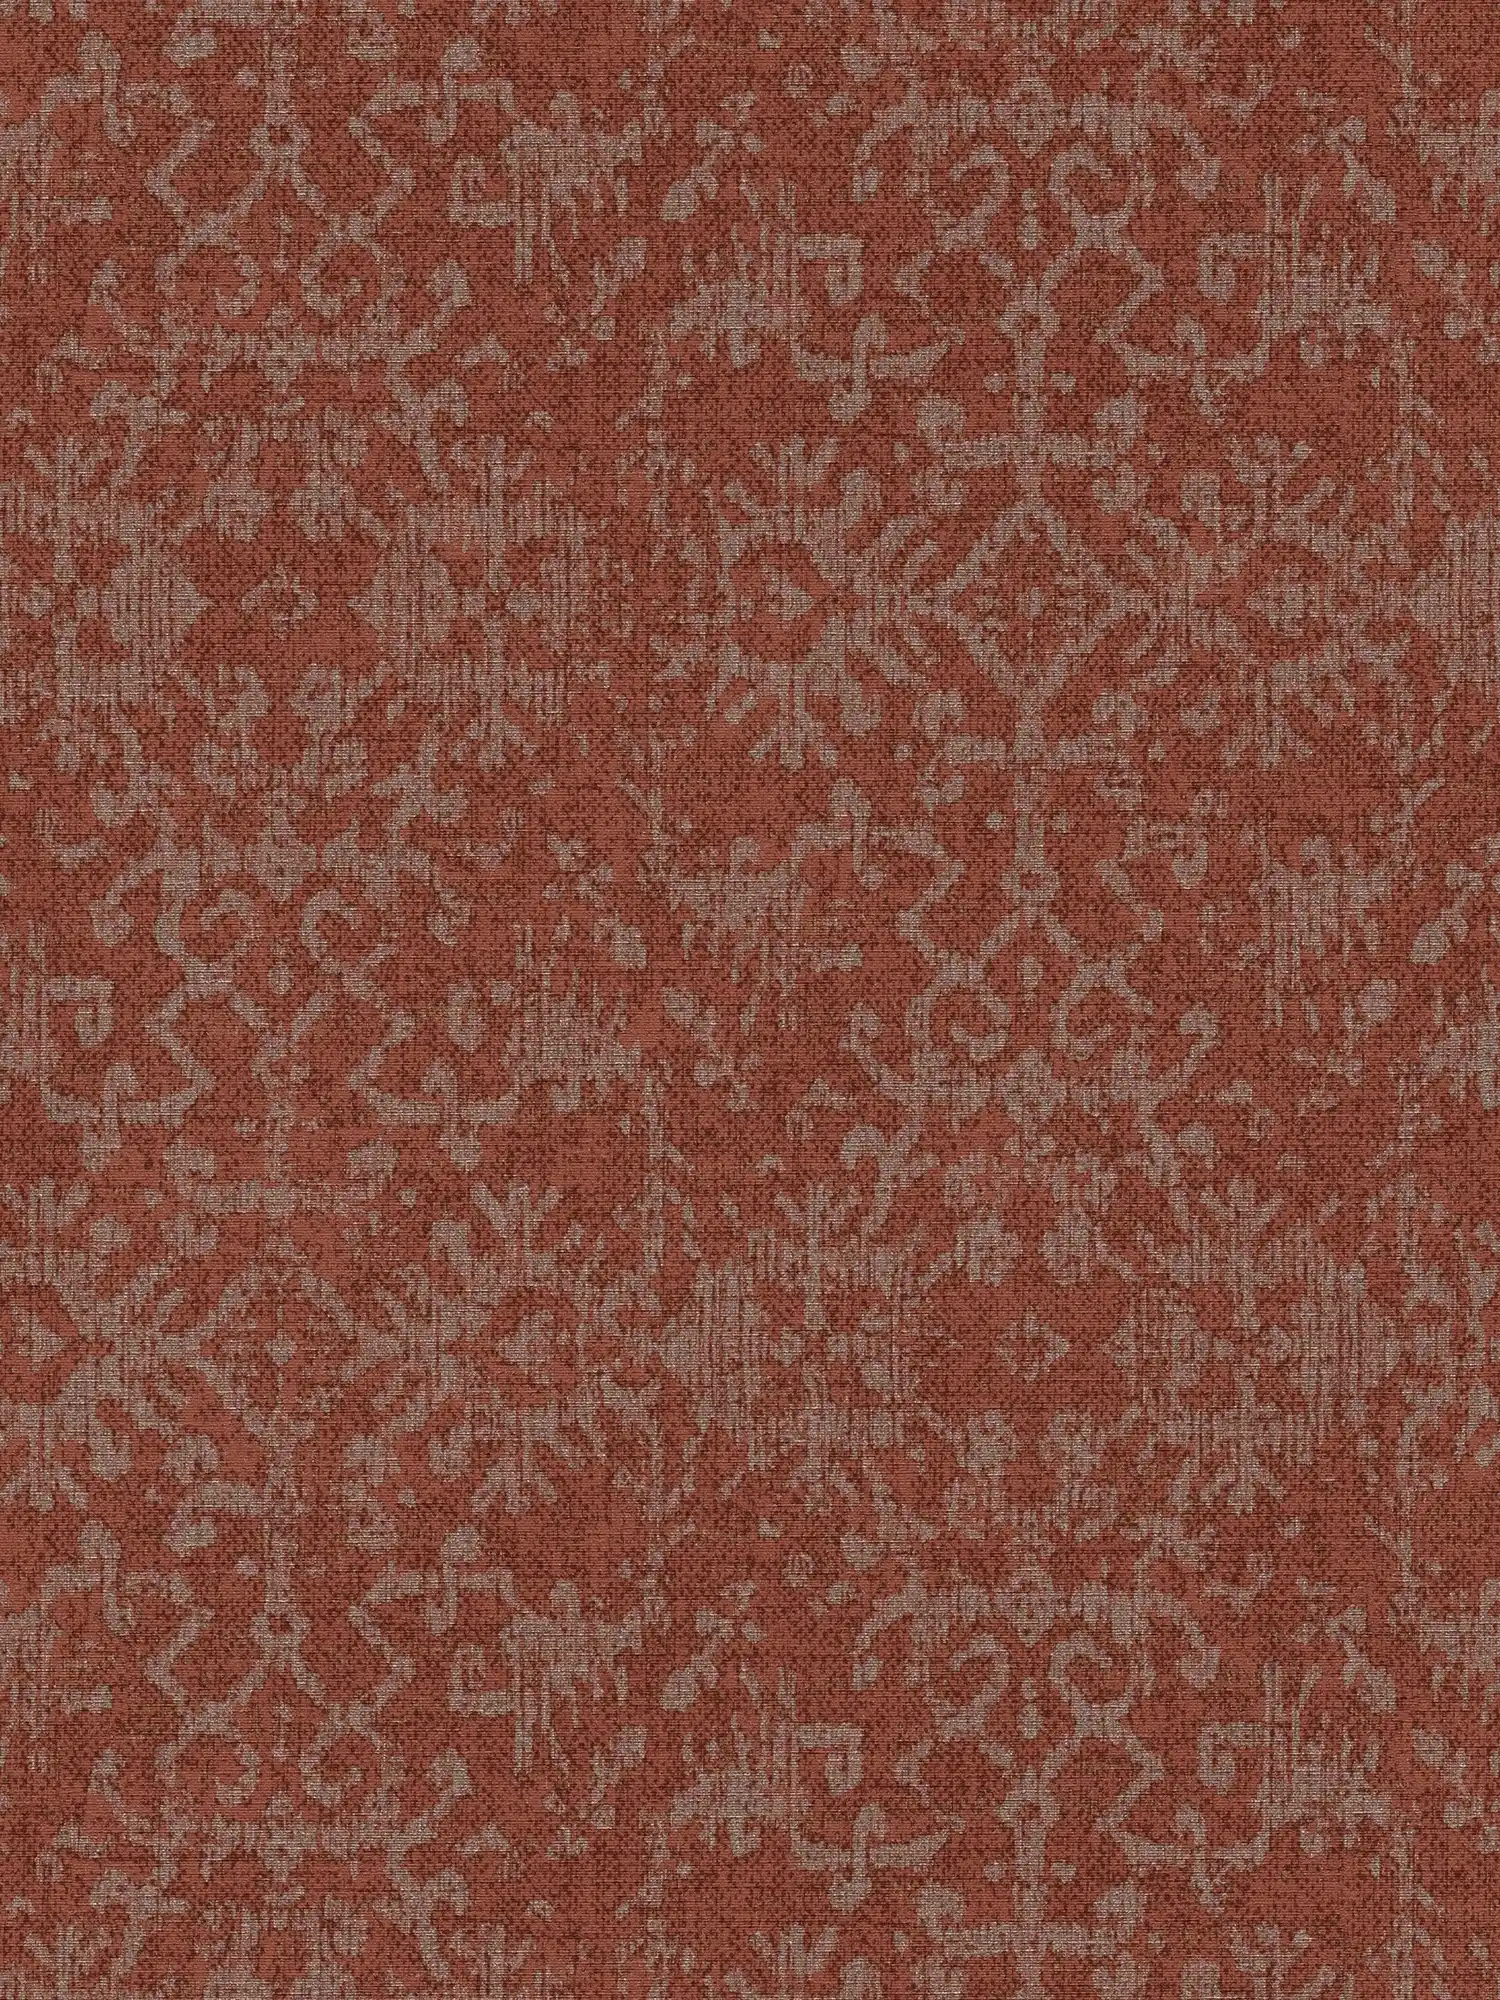 Wallpaper ornament design in Persian carpet look
